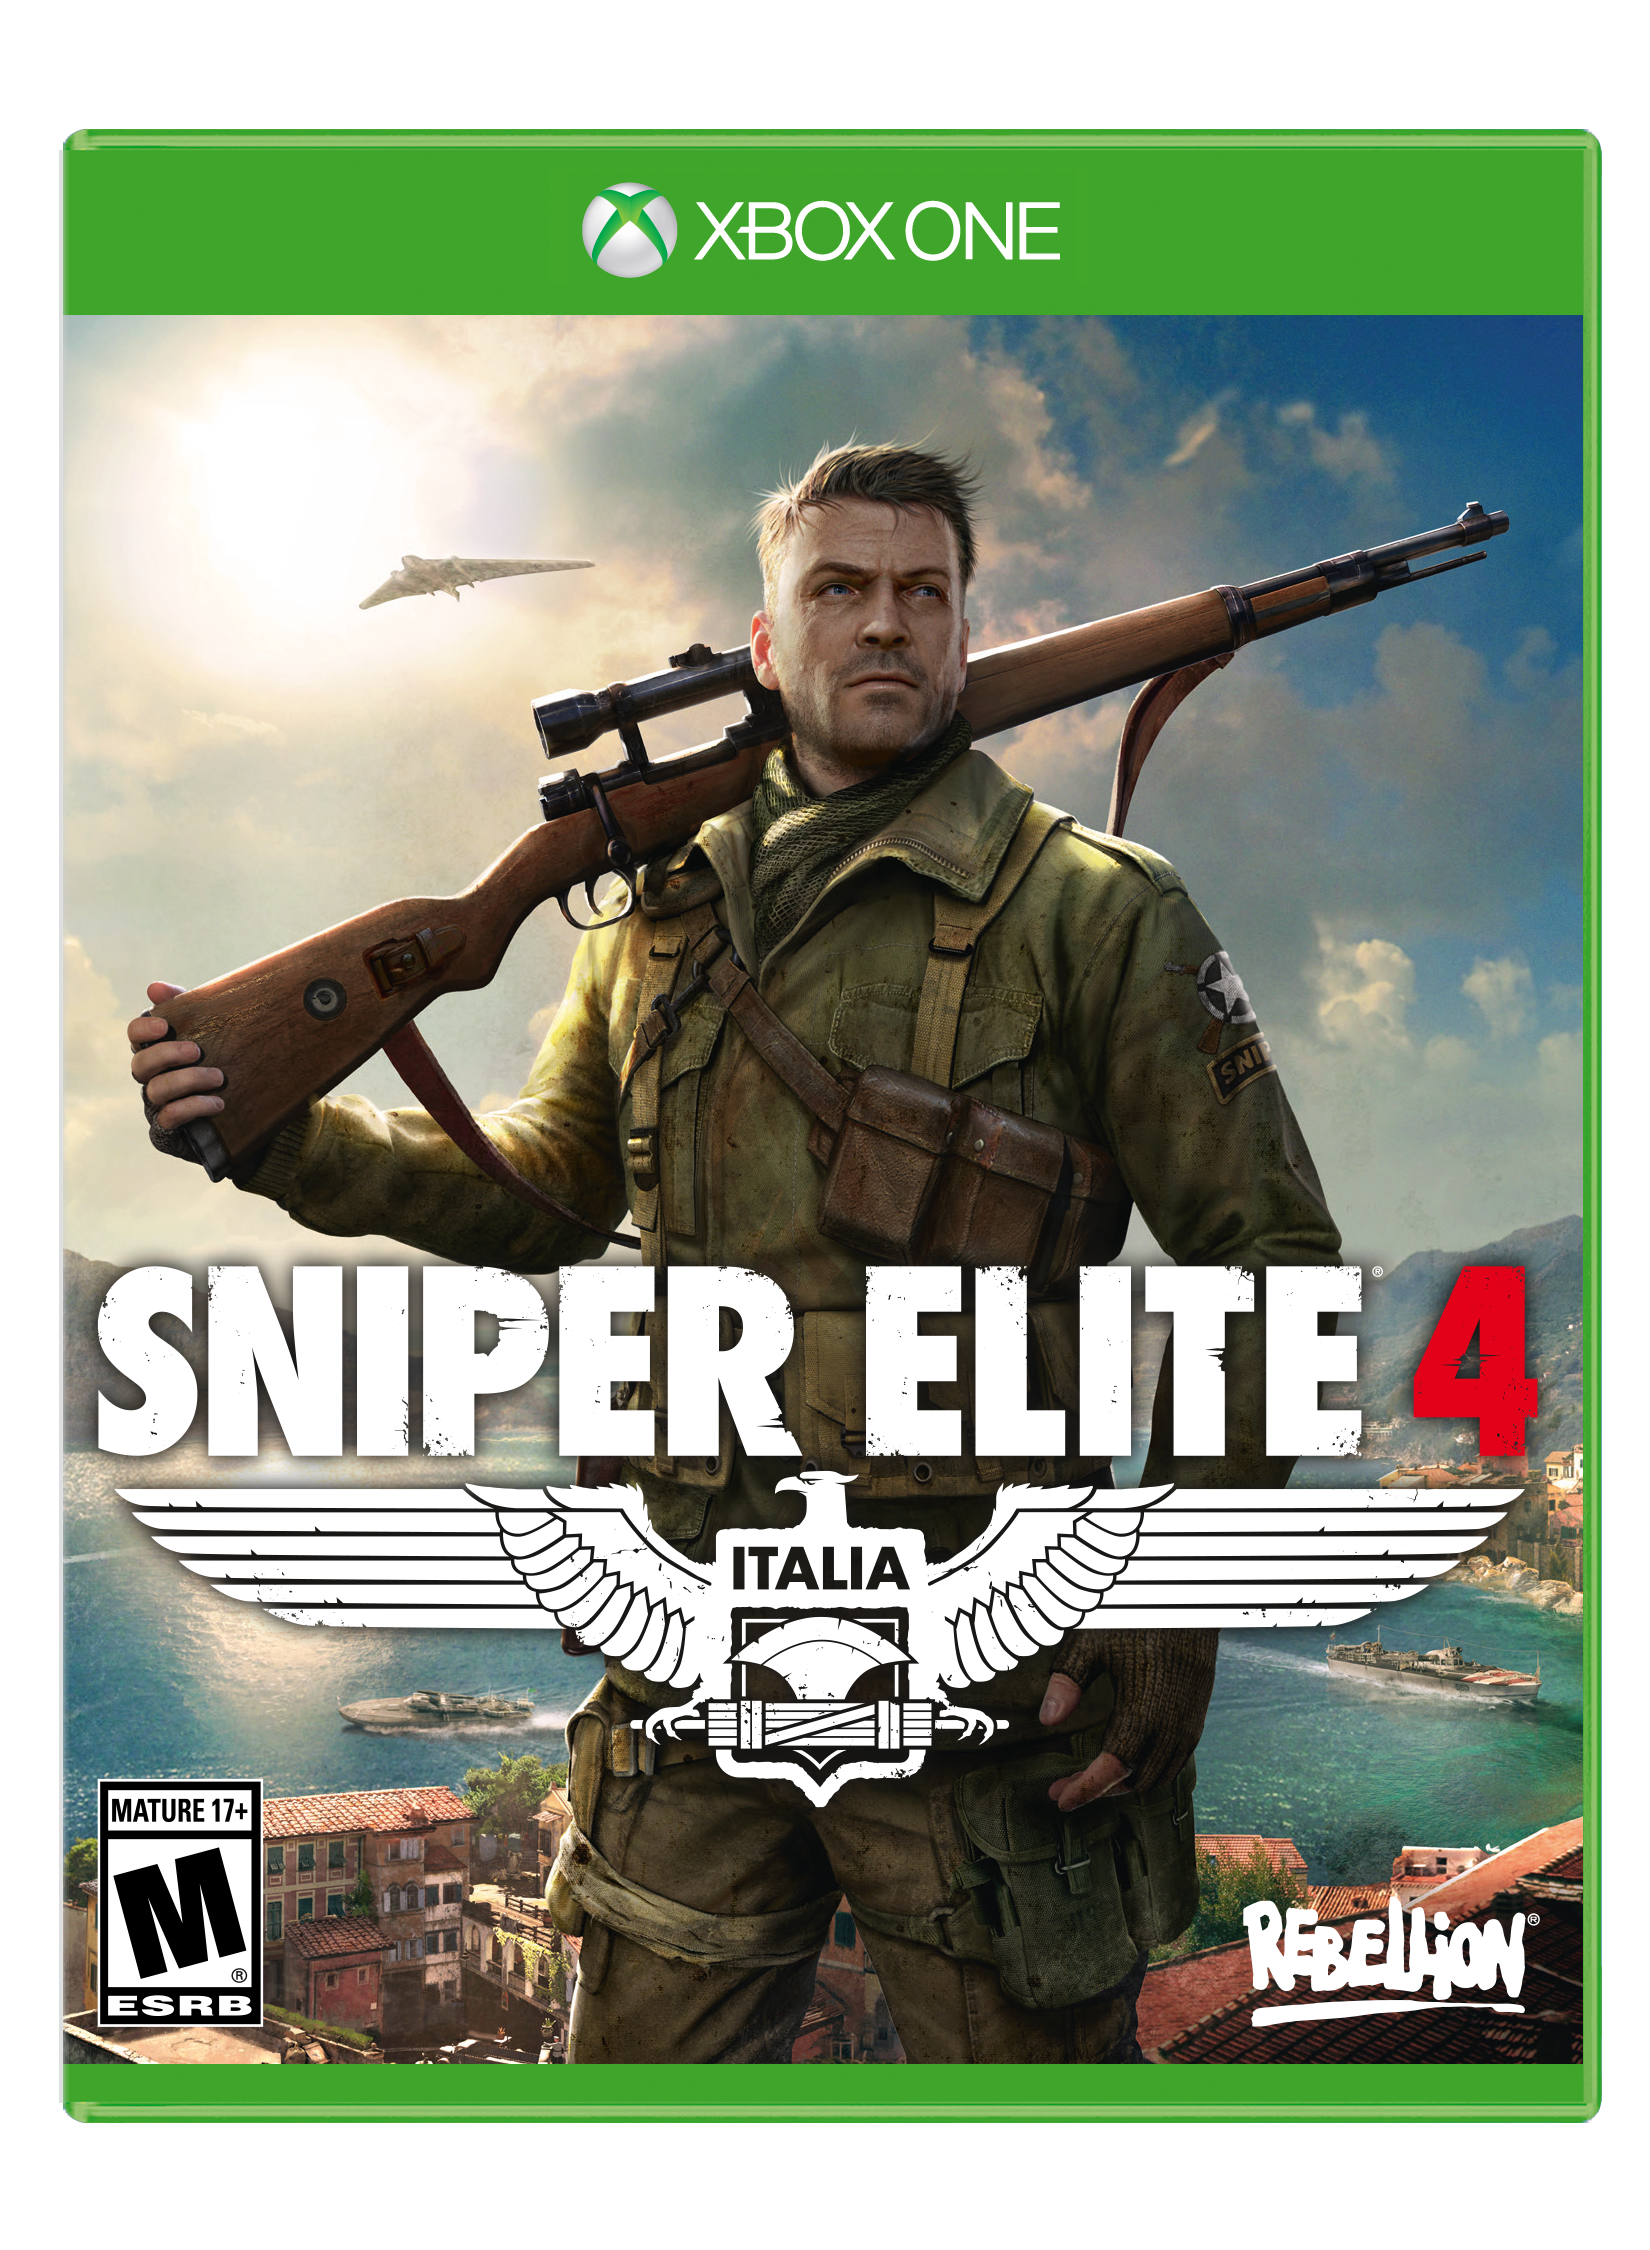 Italian Glimpse preface Sniper Elite 4 - Xbox One